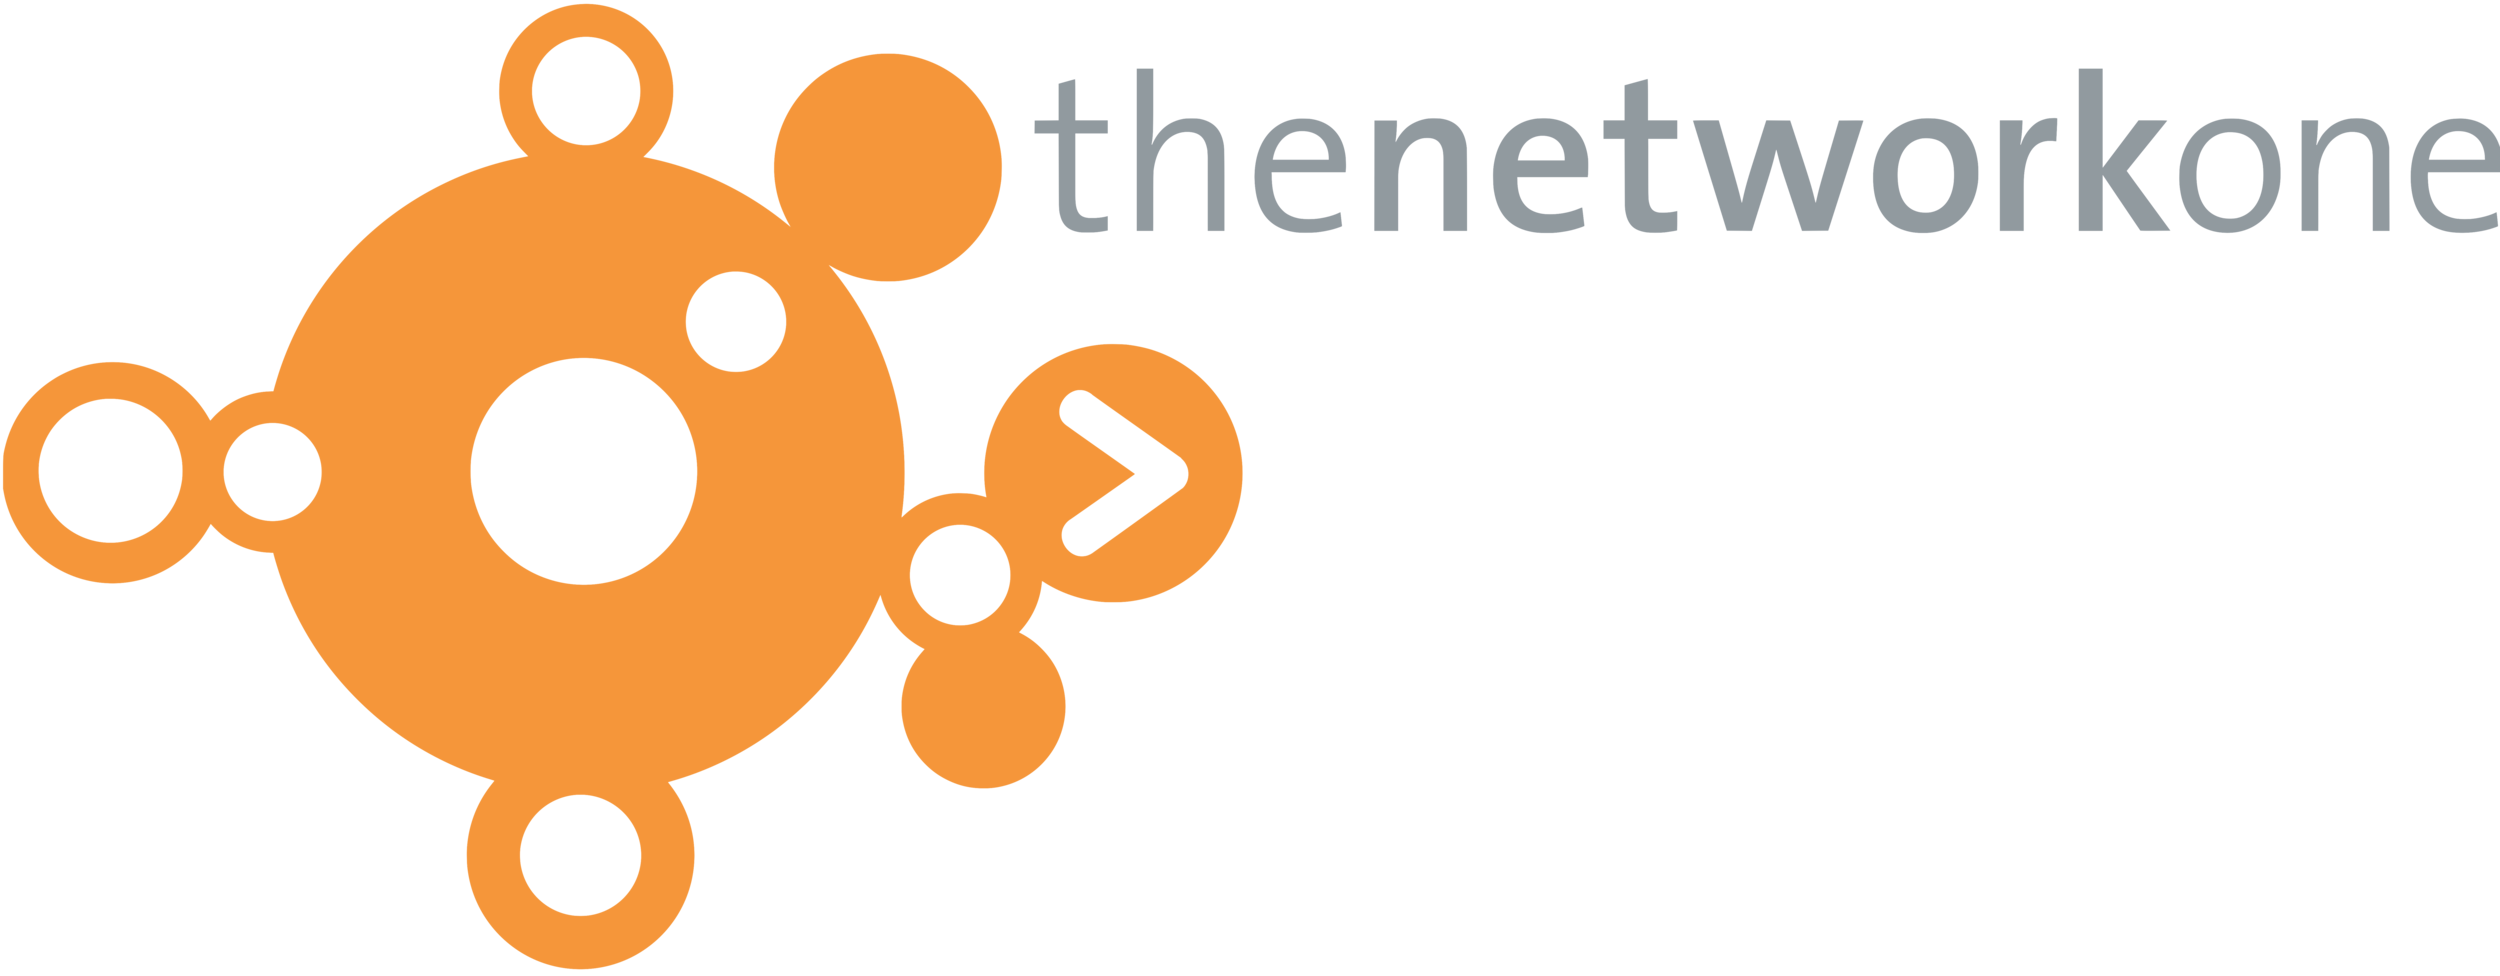 theneworkone A1 logo 2019 (1).png